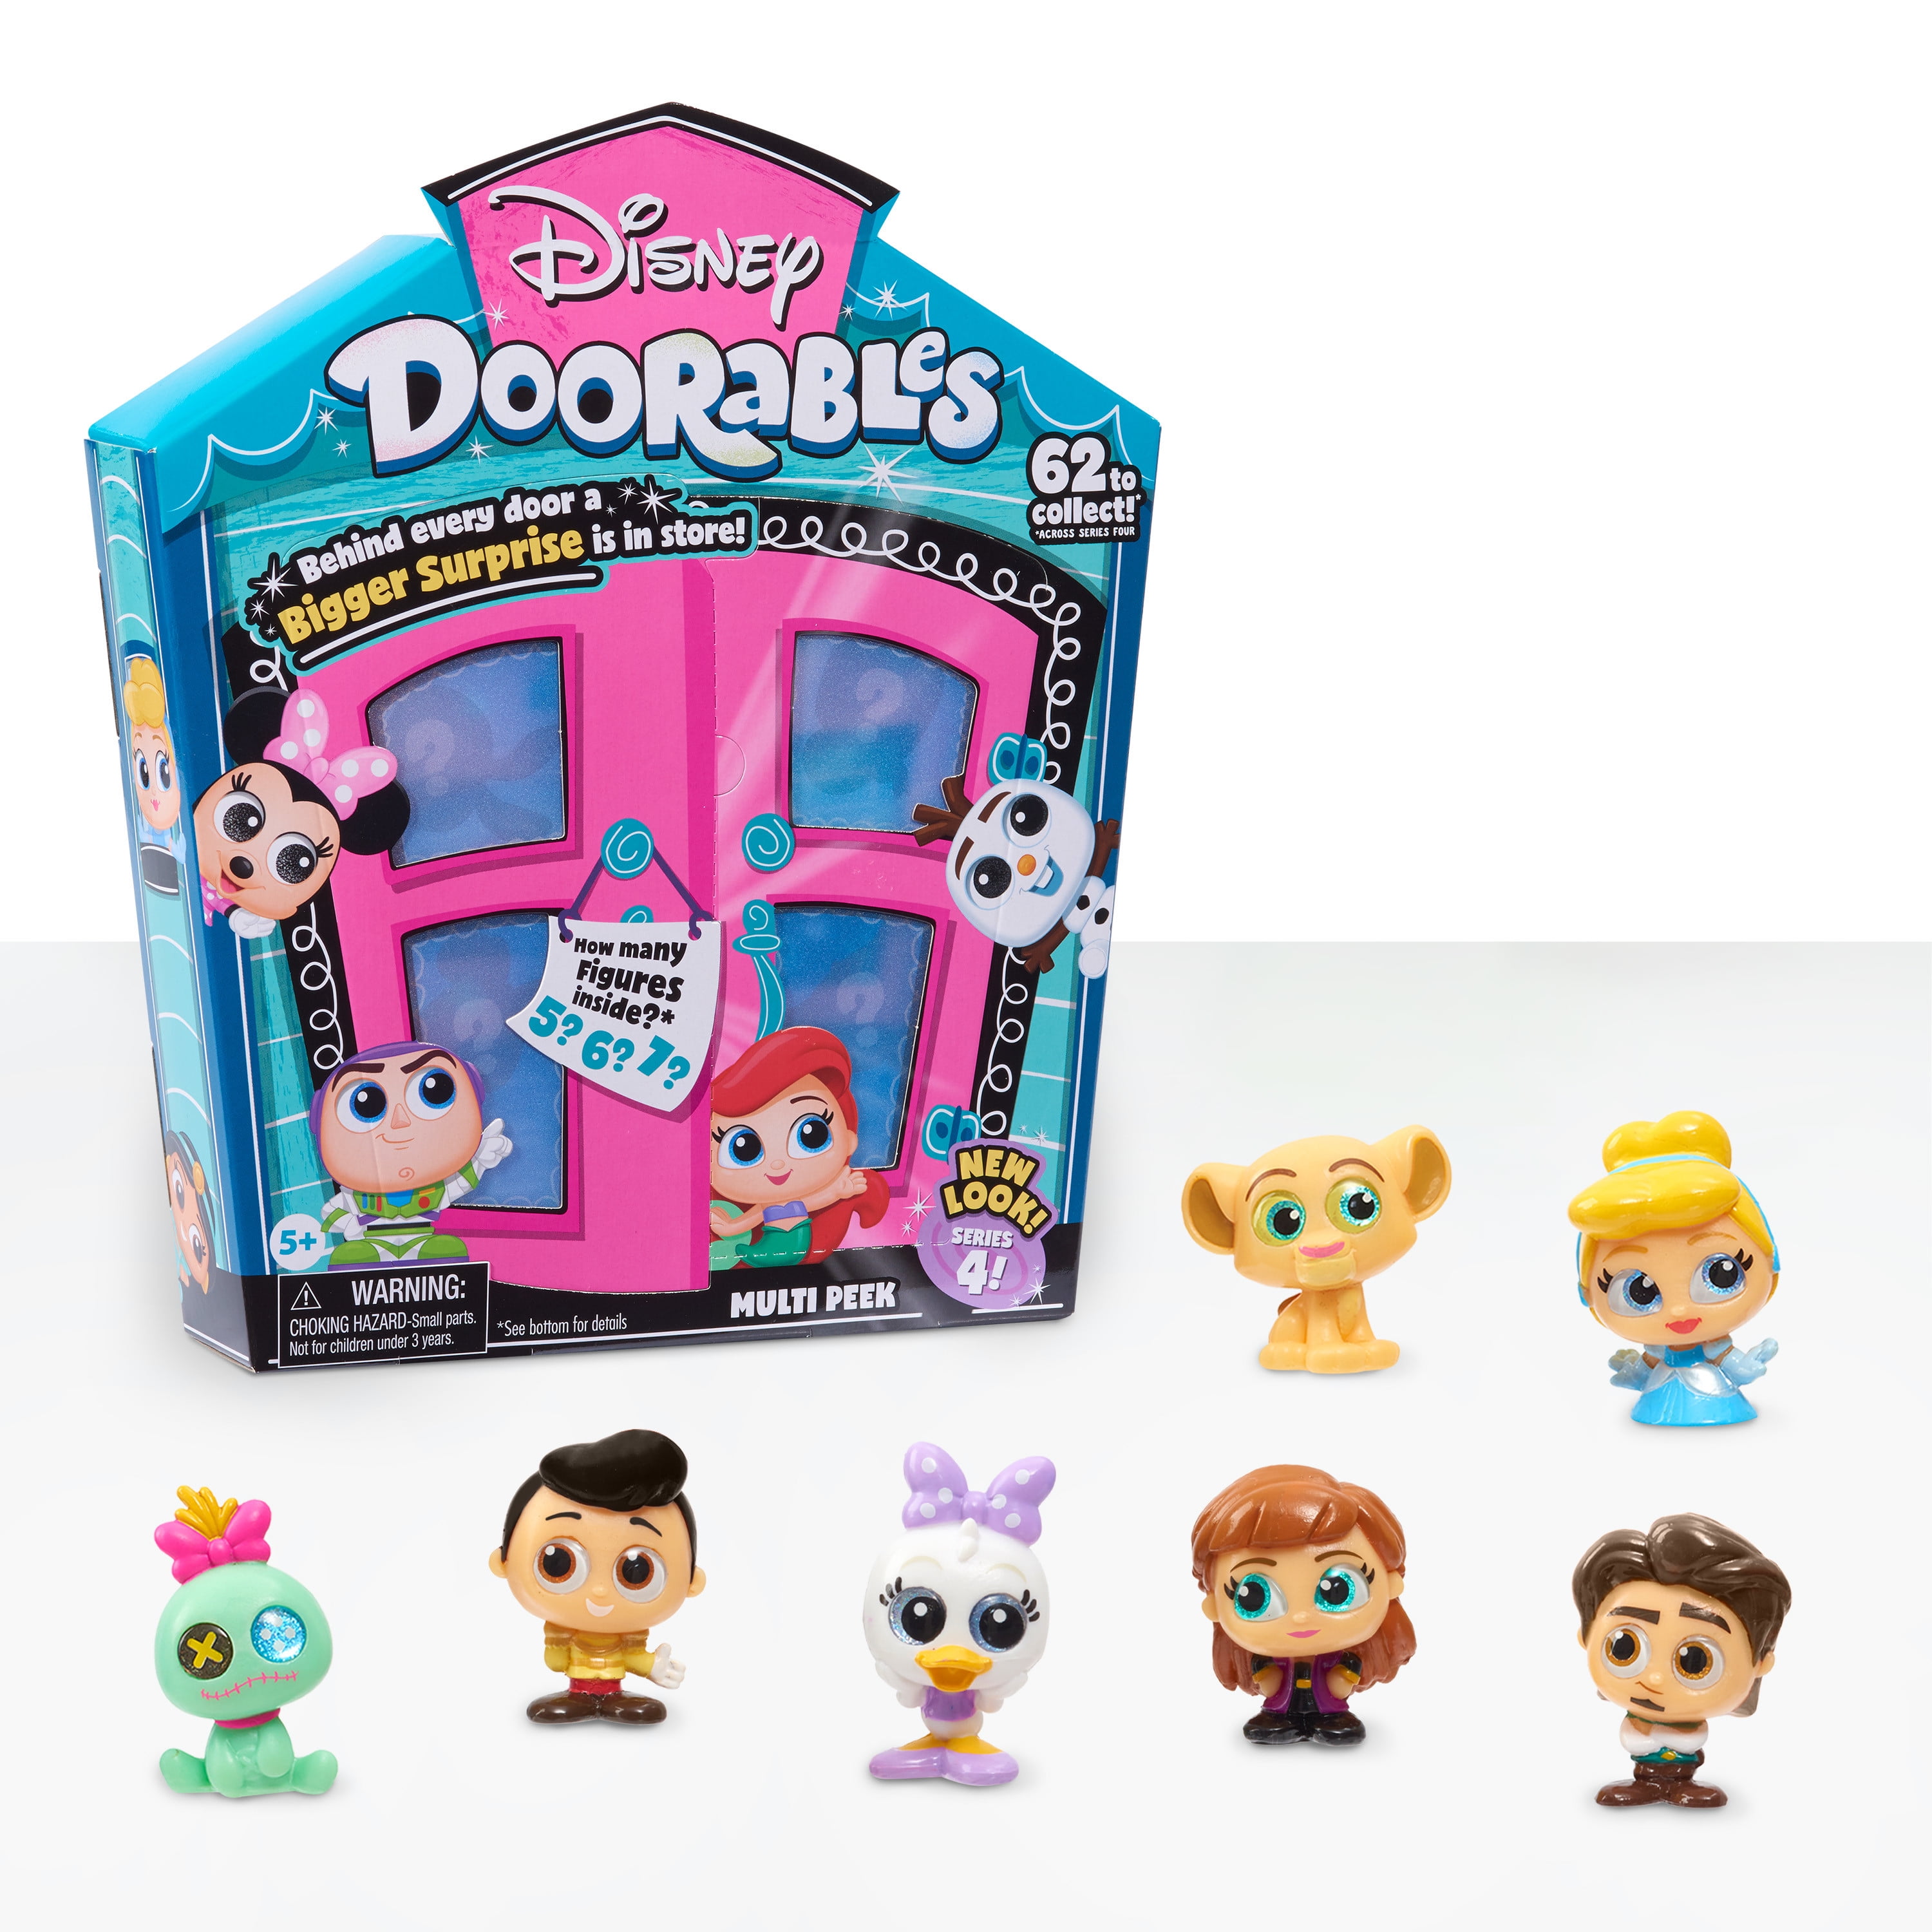 Disney Doorables Series 2 Mini Peek Mystery Pack 2 or 3 Figures 